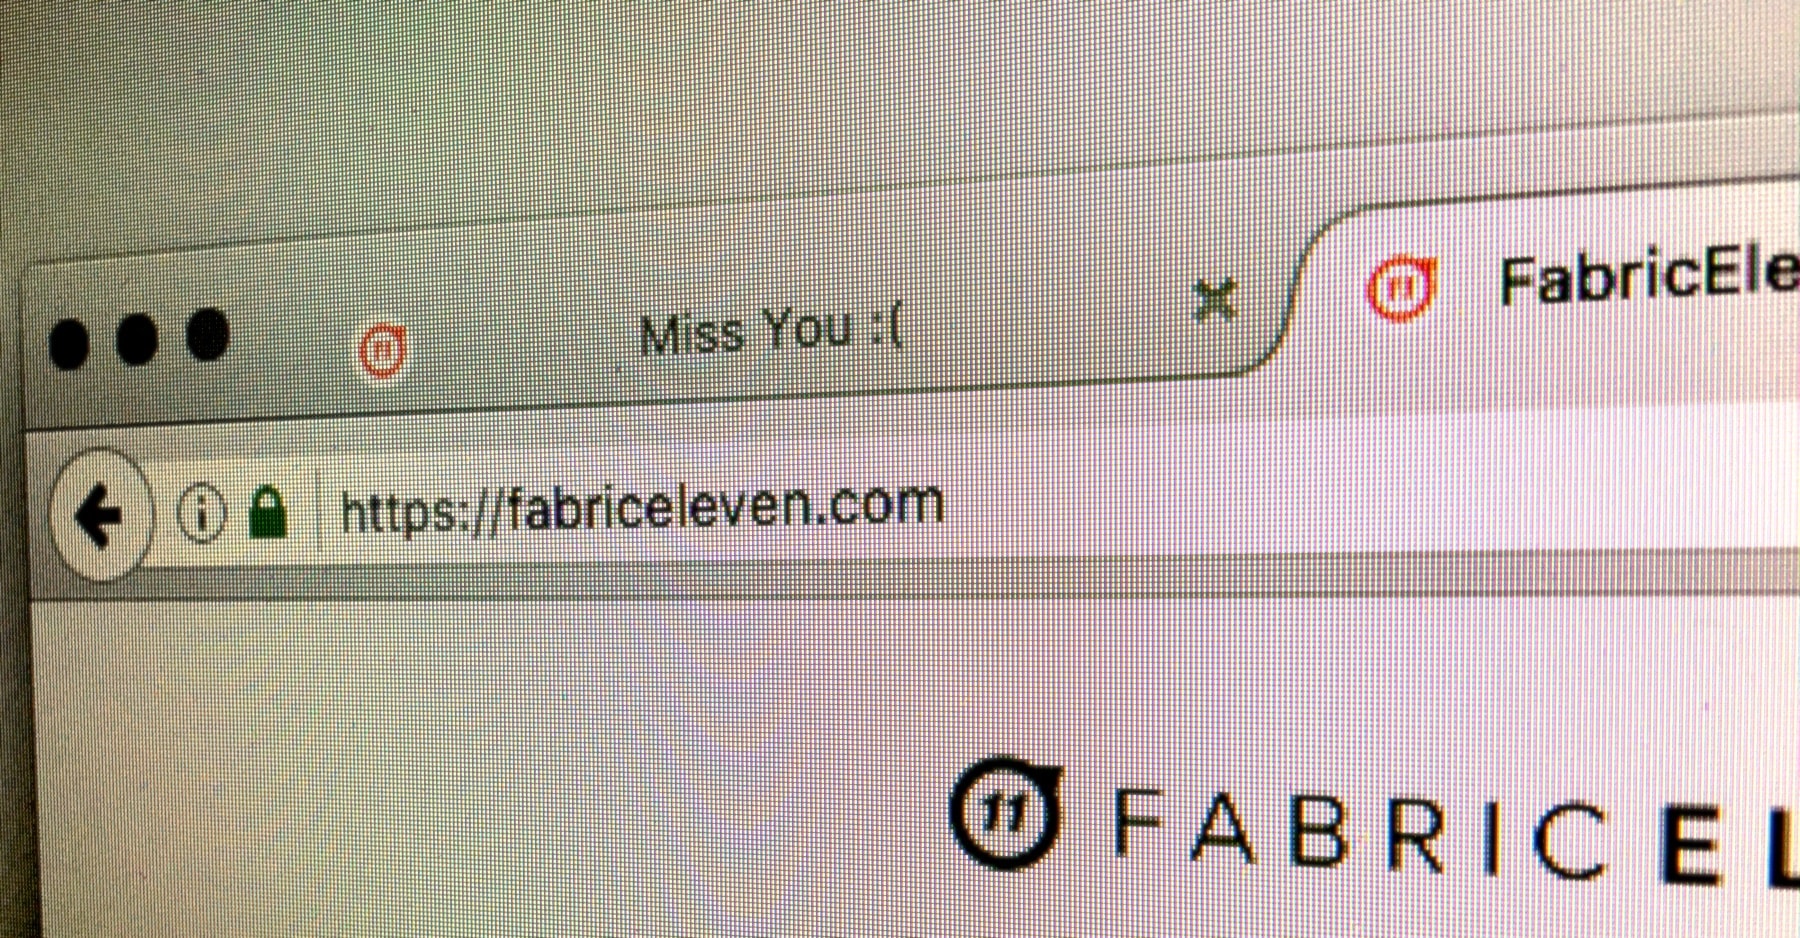 fabriceleven.com